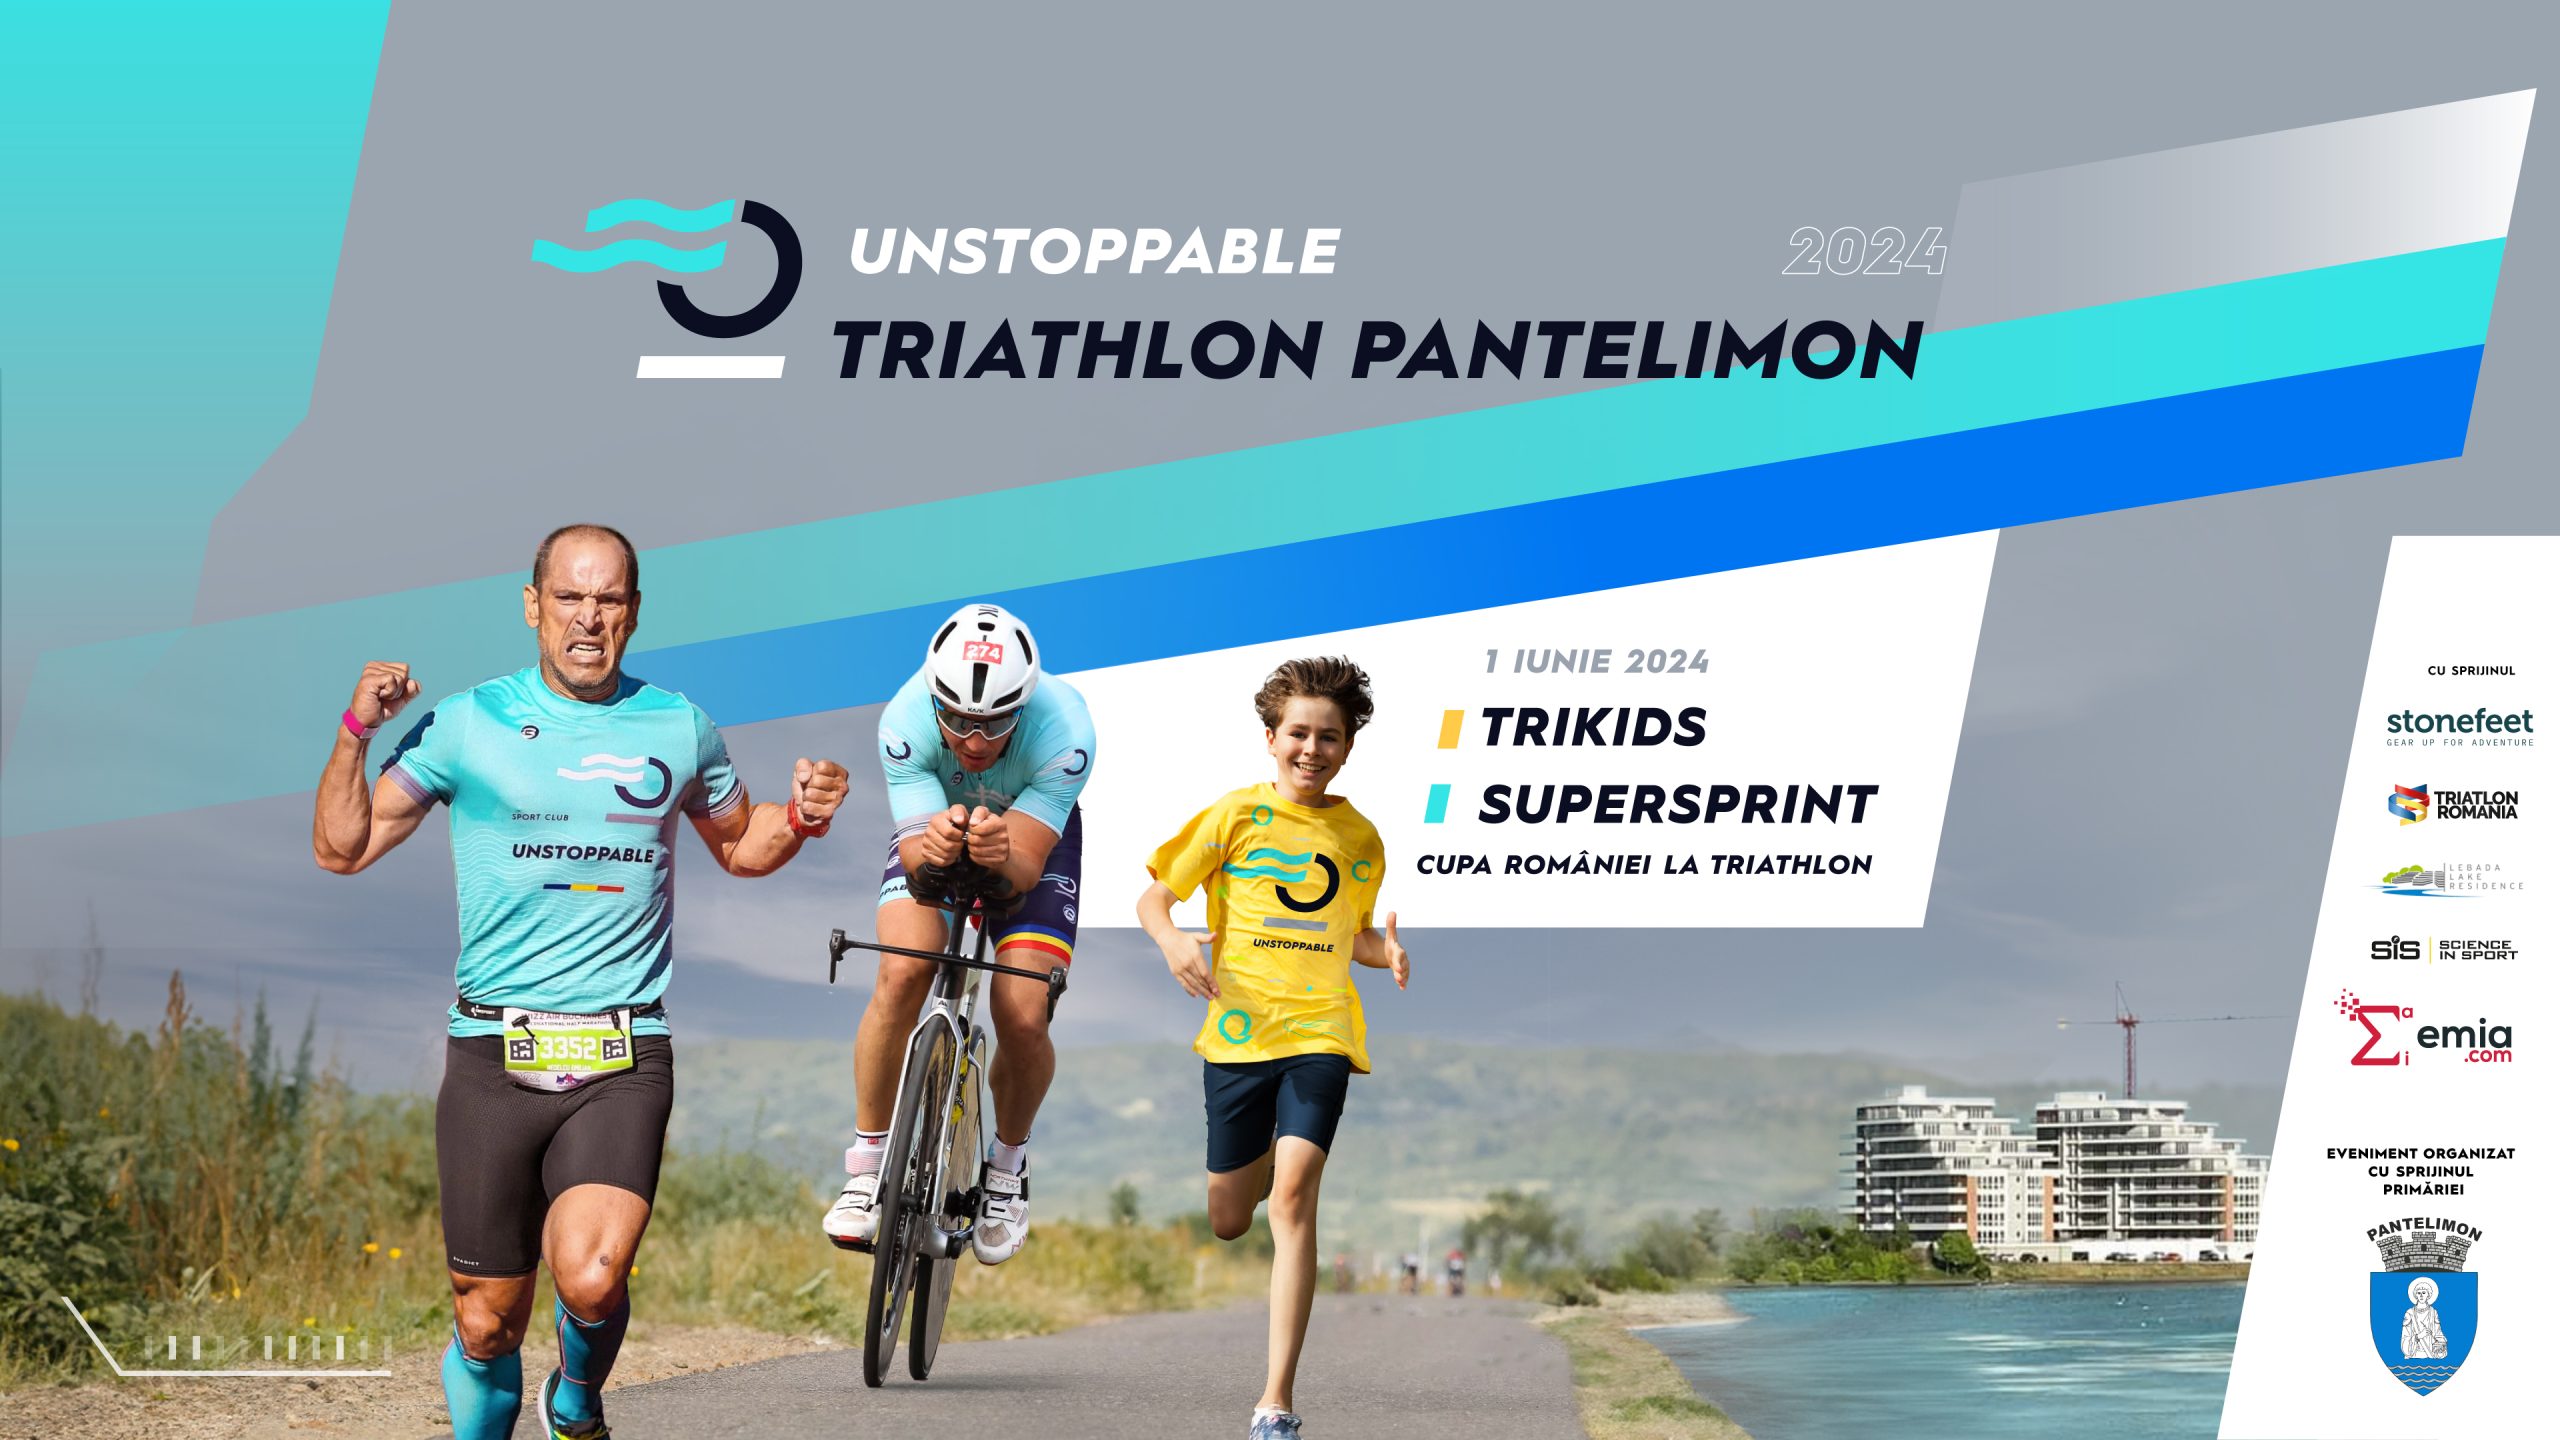 Înscrieri deschise pentru Unstoppable Triathlon Pantelimon 2024!